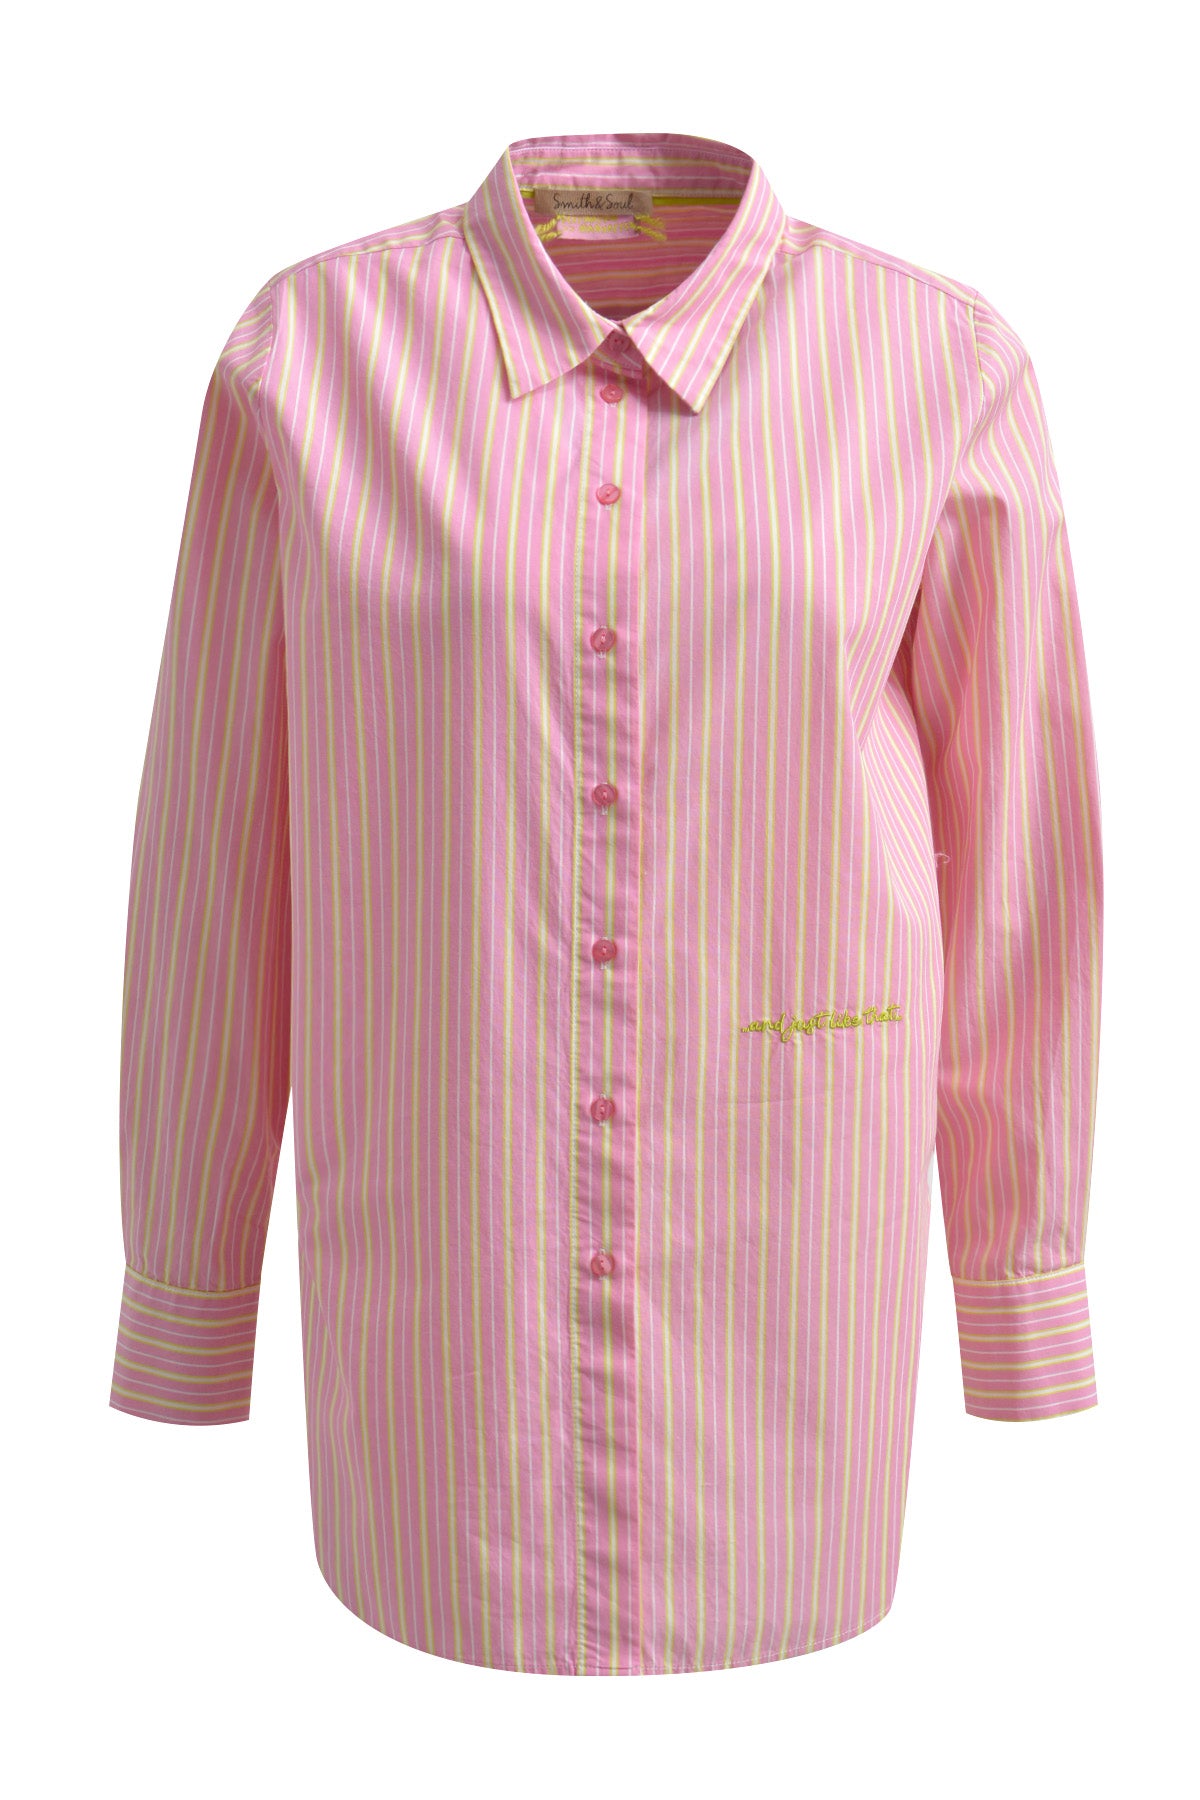 Smith & Soul 0224-0300-STR cotton stripe t-shirt